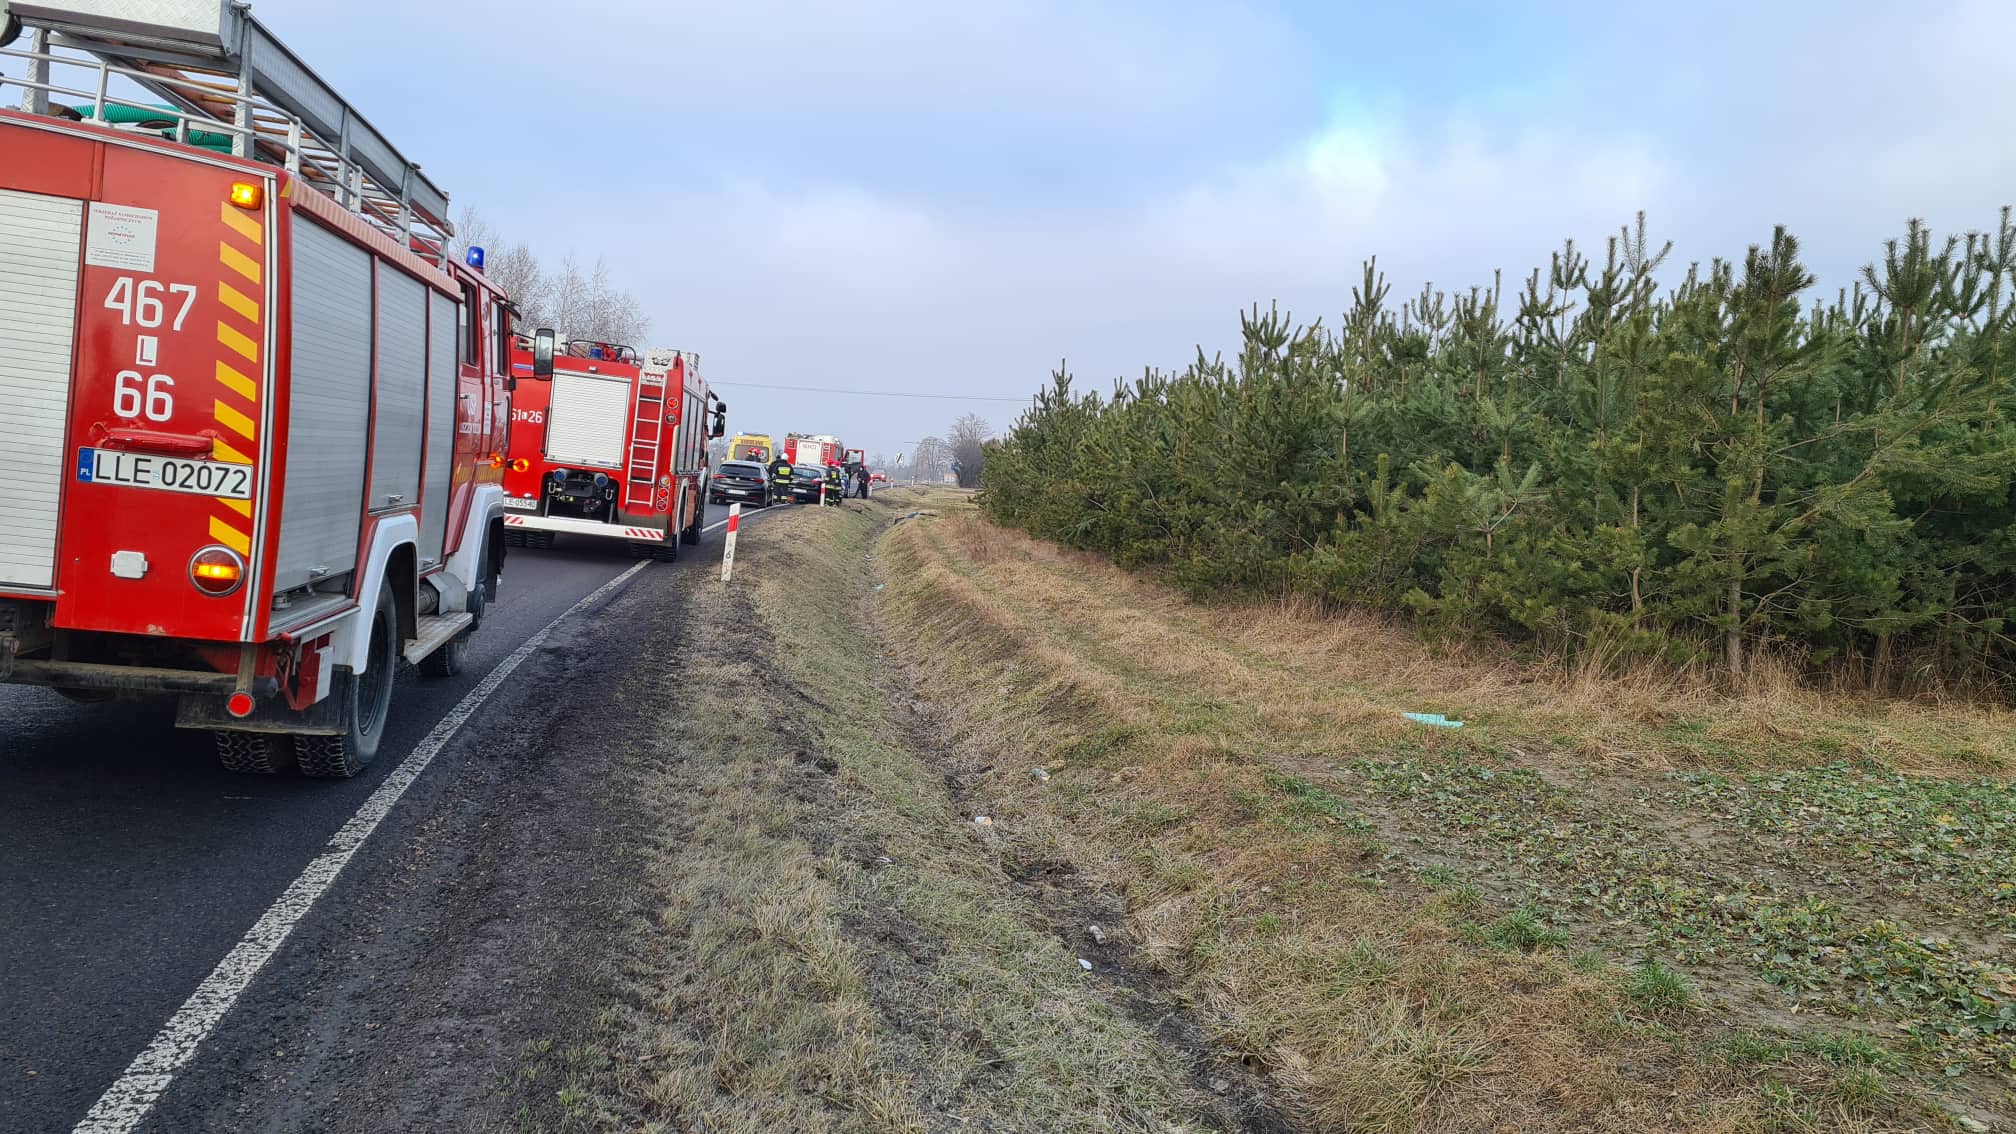 Wypadek na trasie Lublin – Łęczna. Dwie osoby poszkodowane (zdjęcia) AKTUALIZACJA